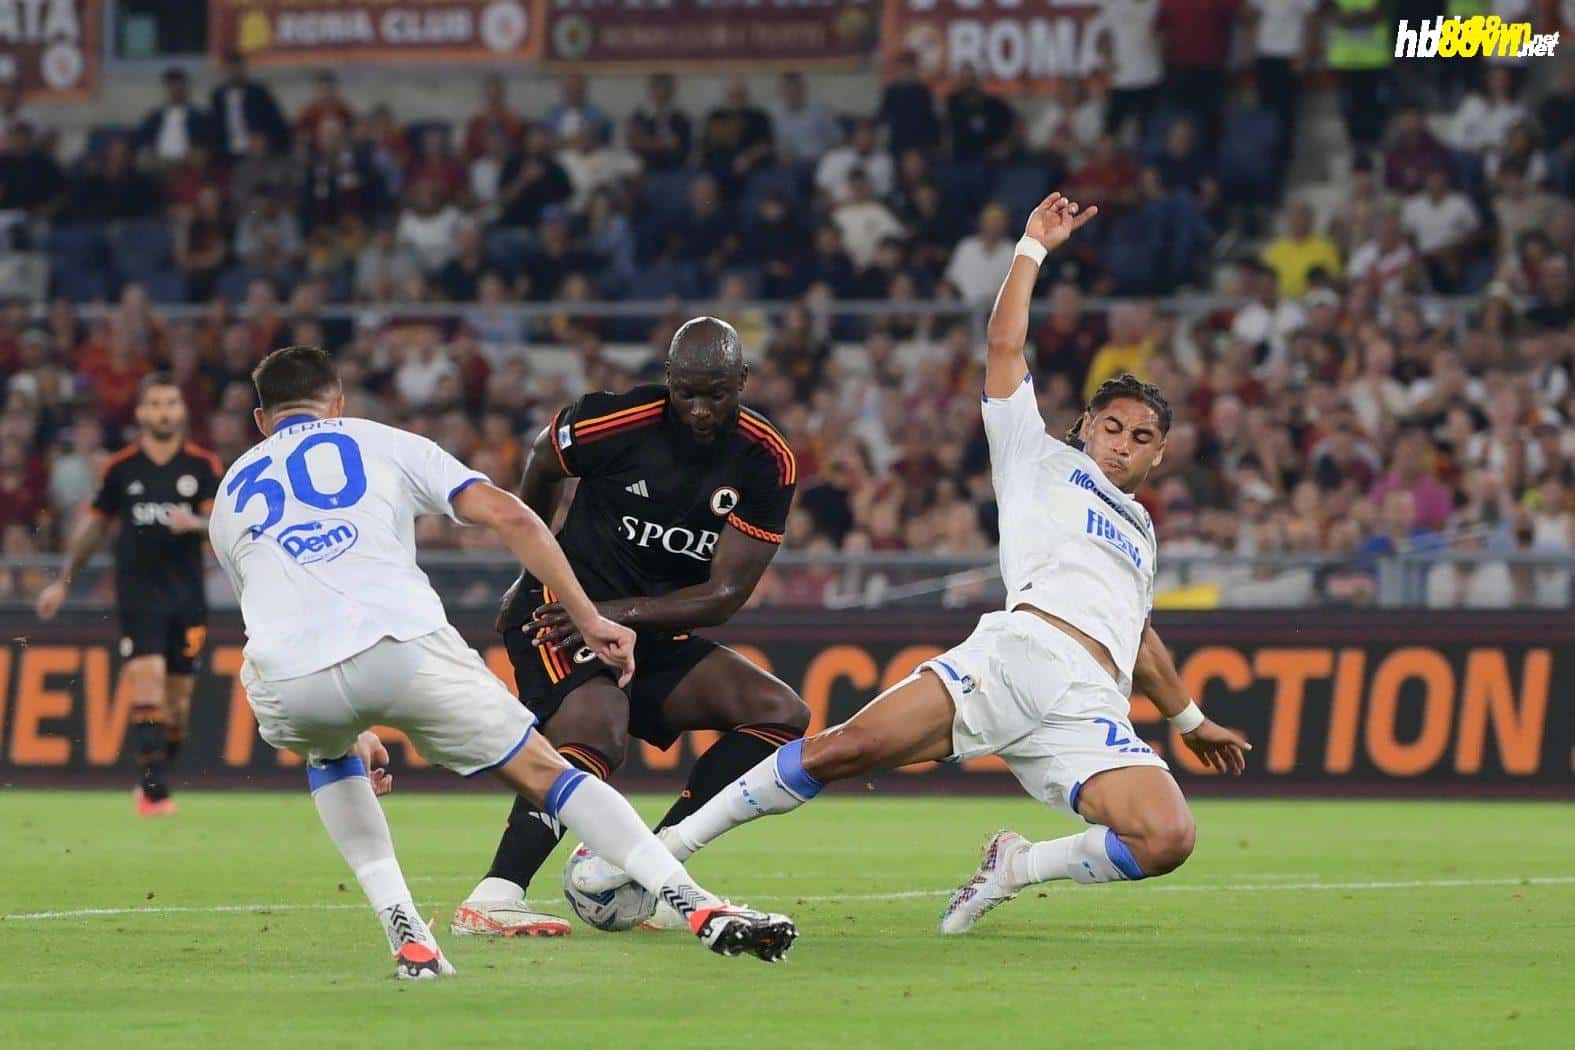 Lukaku làm động tác giả loại trung vệ Frosinone trước khi dứt điểm ghi bàn mở tỷ số cho Roma trong trận thắng 2-0 ở vòng 7 Serie A ngày 1/10. Ảnh: asroma.it